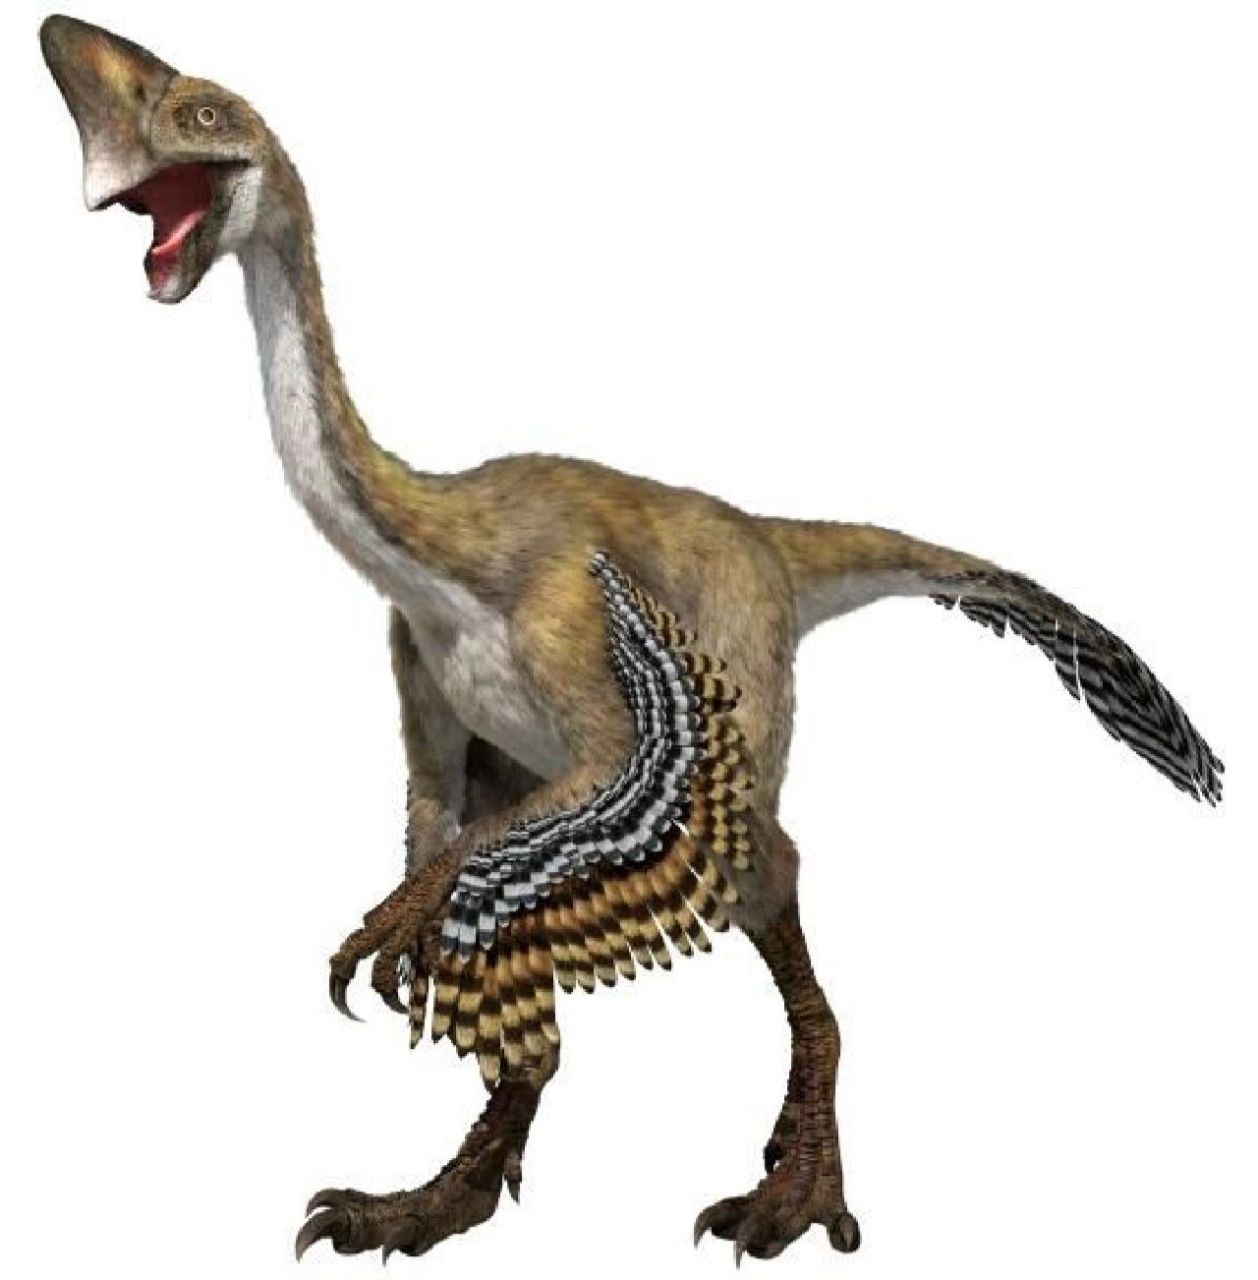 白垩纪晚期的食草恐龙图片